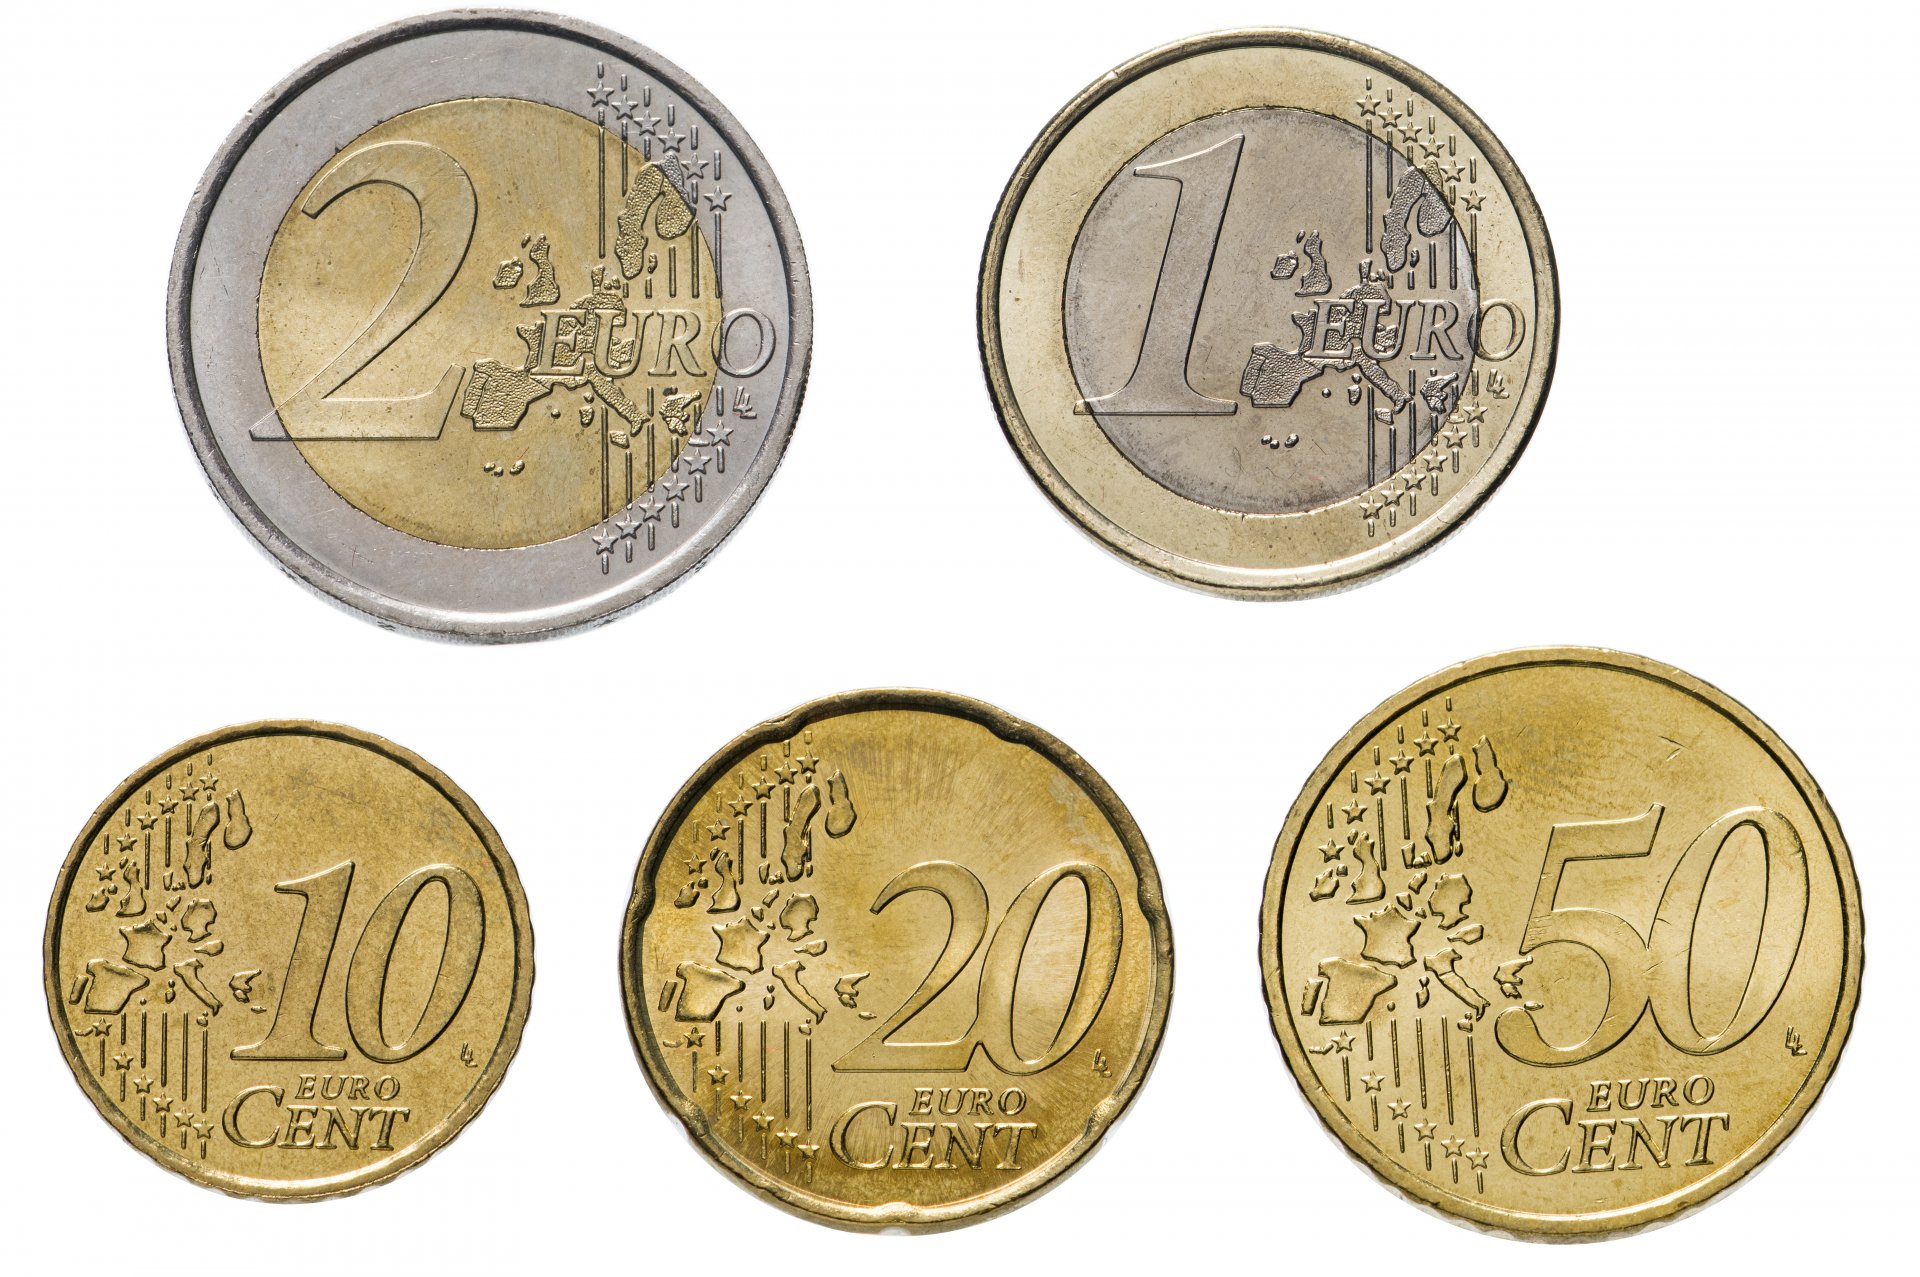 5 рублей валюта. Железные евро 1 евро 2 евро 20 центов. 2,5 Евро монета. 20 Евроцентов 2003. Монета 2 евро и 5 евро.